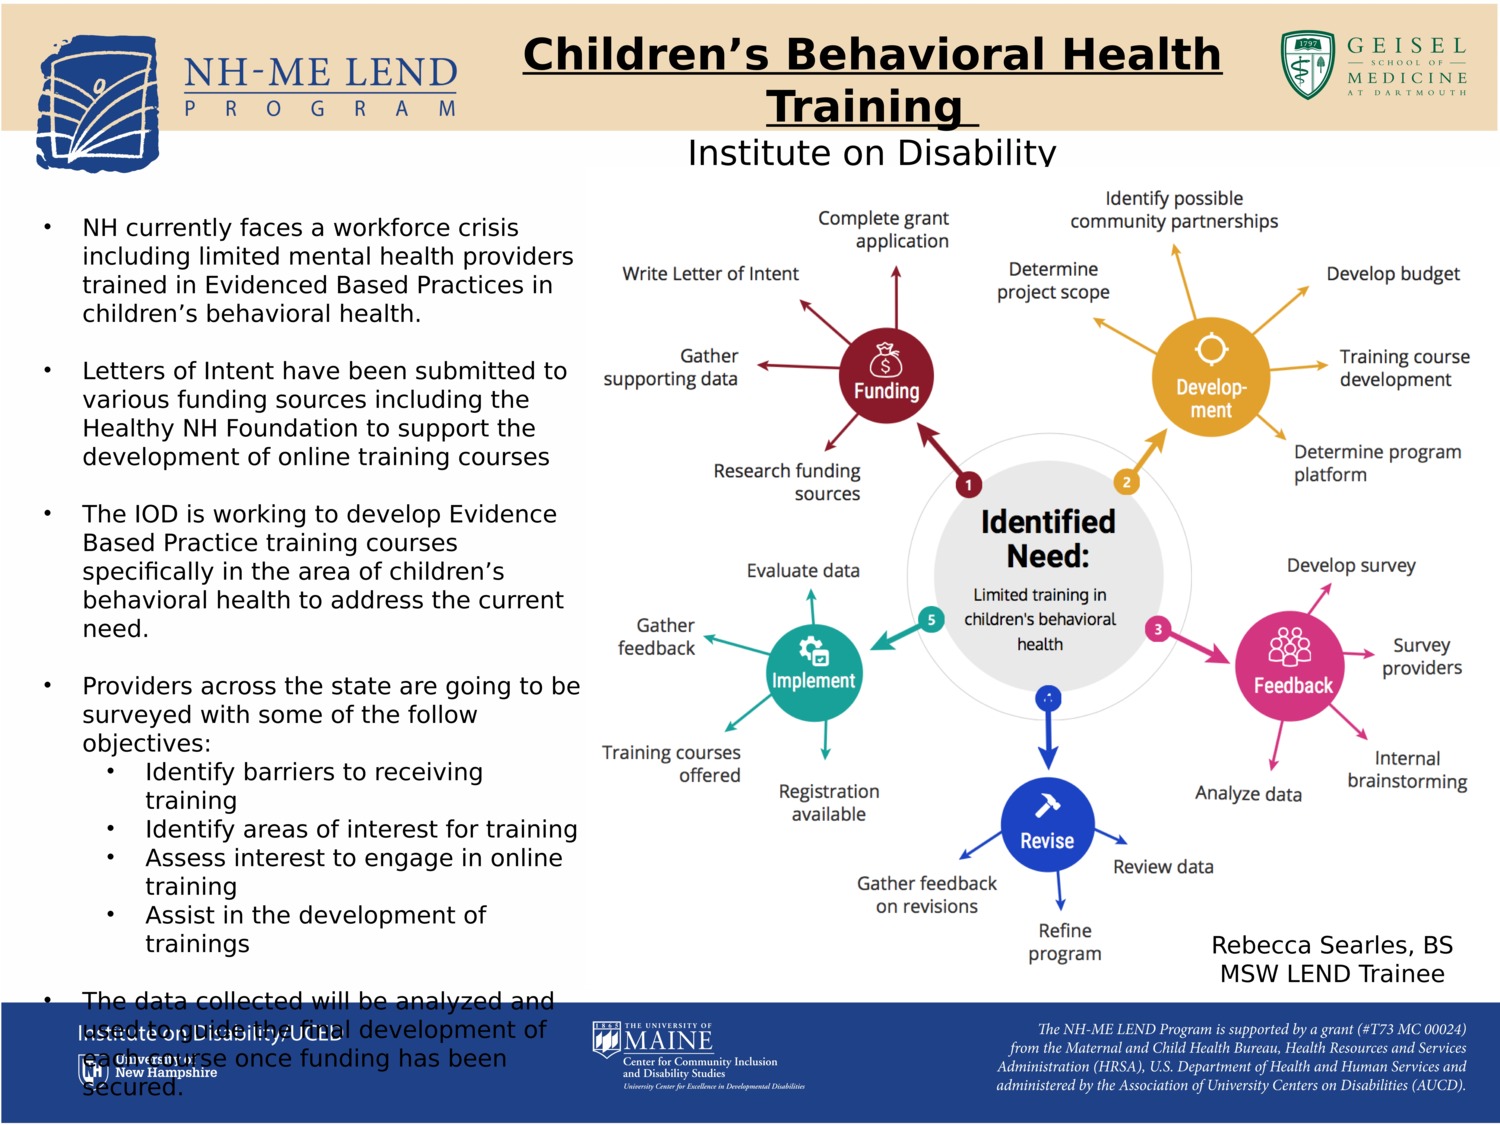 Children's Behavioral Health Training by rlsearles